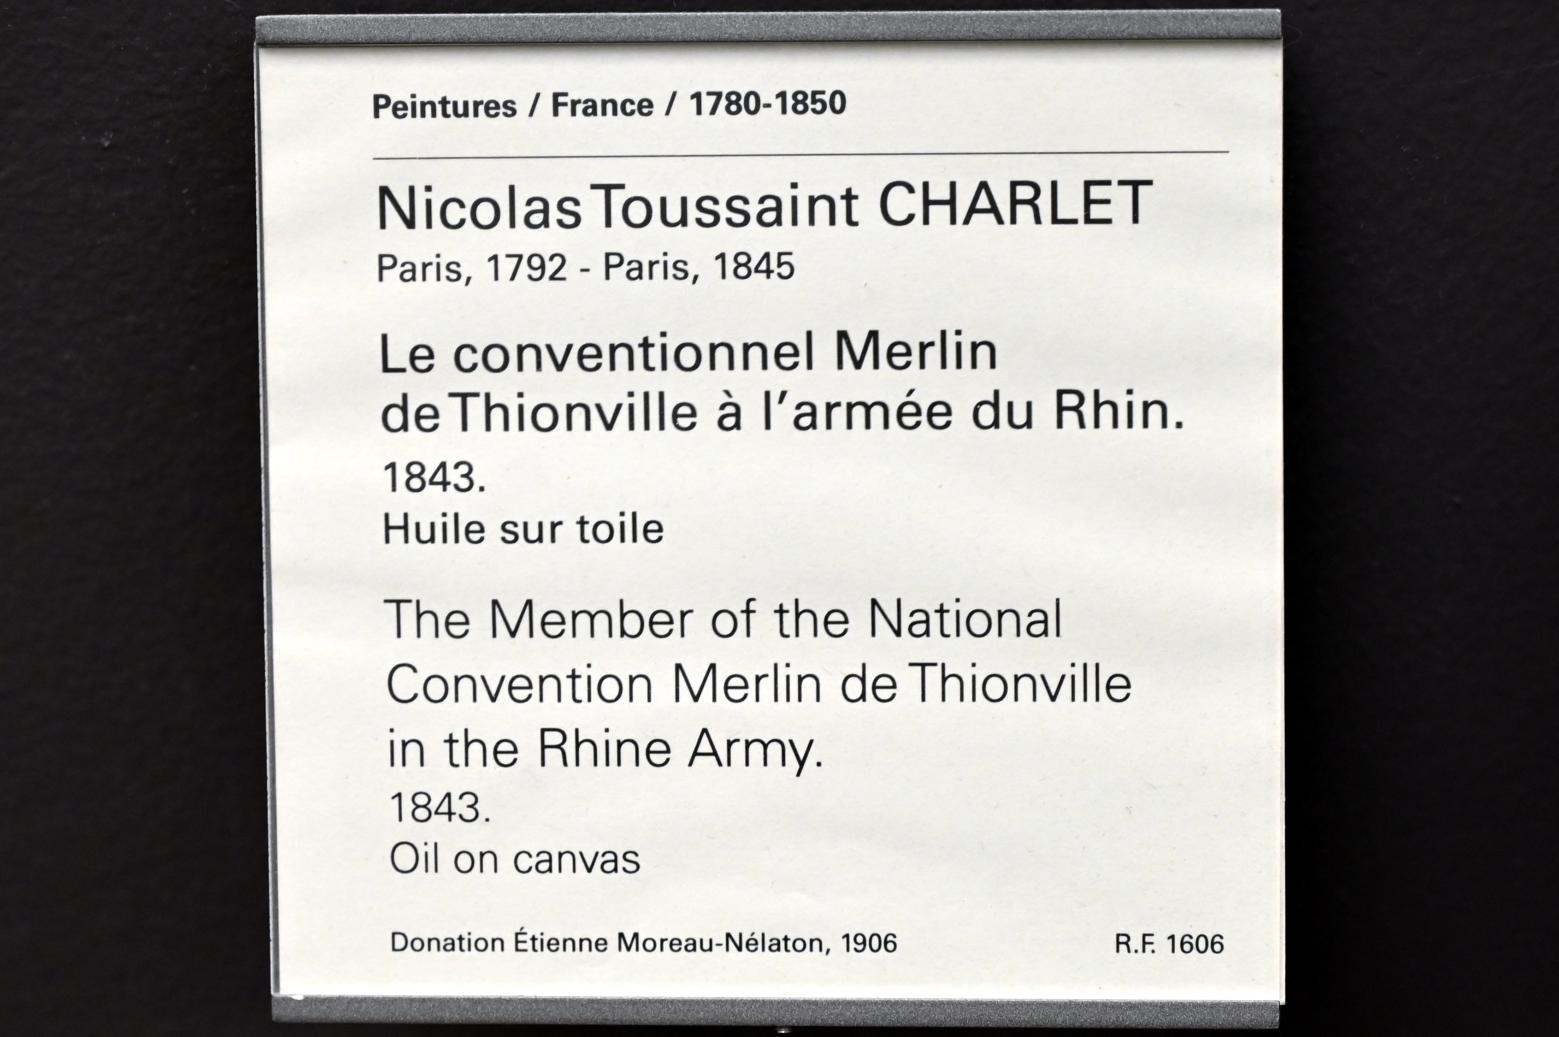 Nicolas-Toussaint Charlet (1843), Der Abgeordnete des Nationalkonvents Merlin de Thionville in der Rheinarmee, Paris, Musée du Louvre, Saal 950, 1843, Bild 2/2